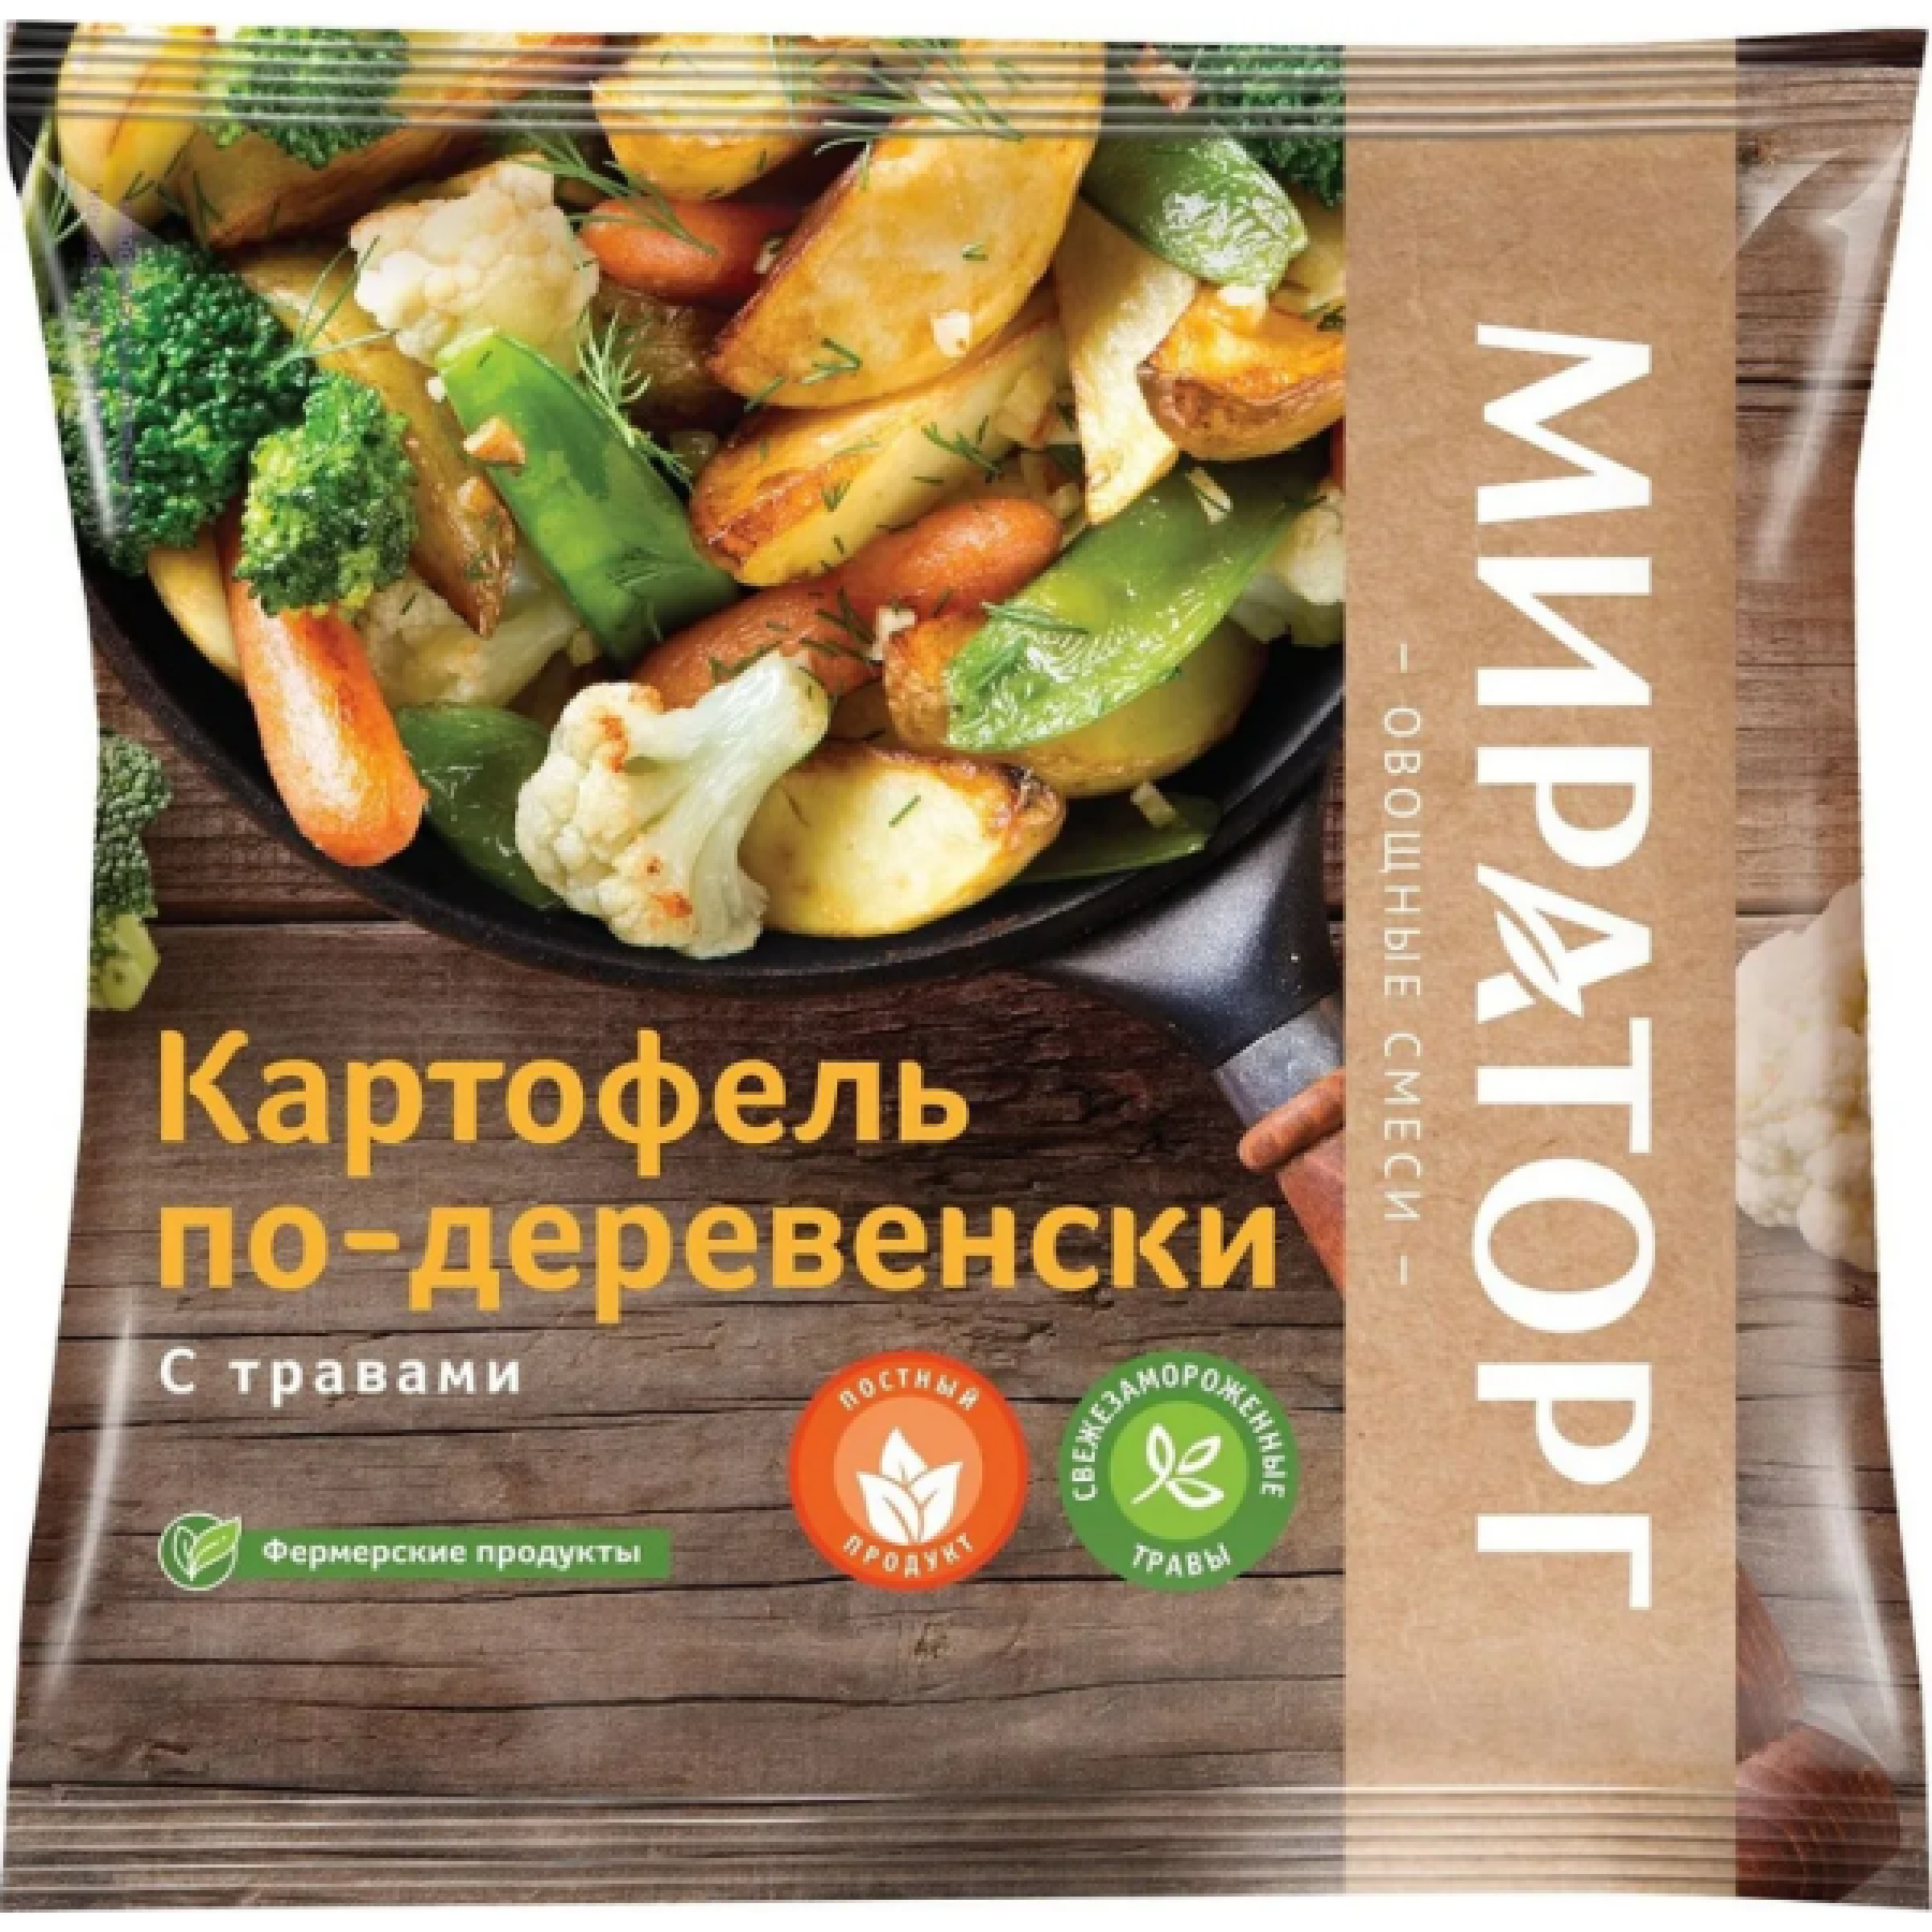 Картофель по-деревенски с травами свежемороженный Vитамин, 400гр